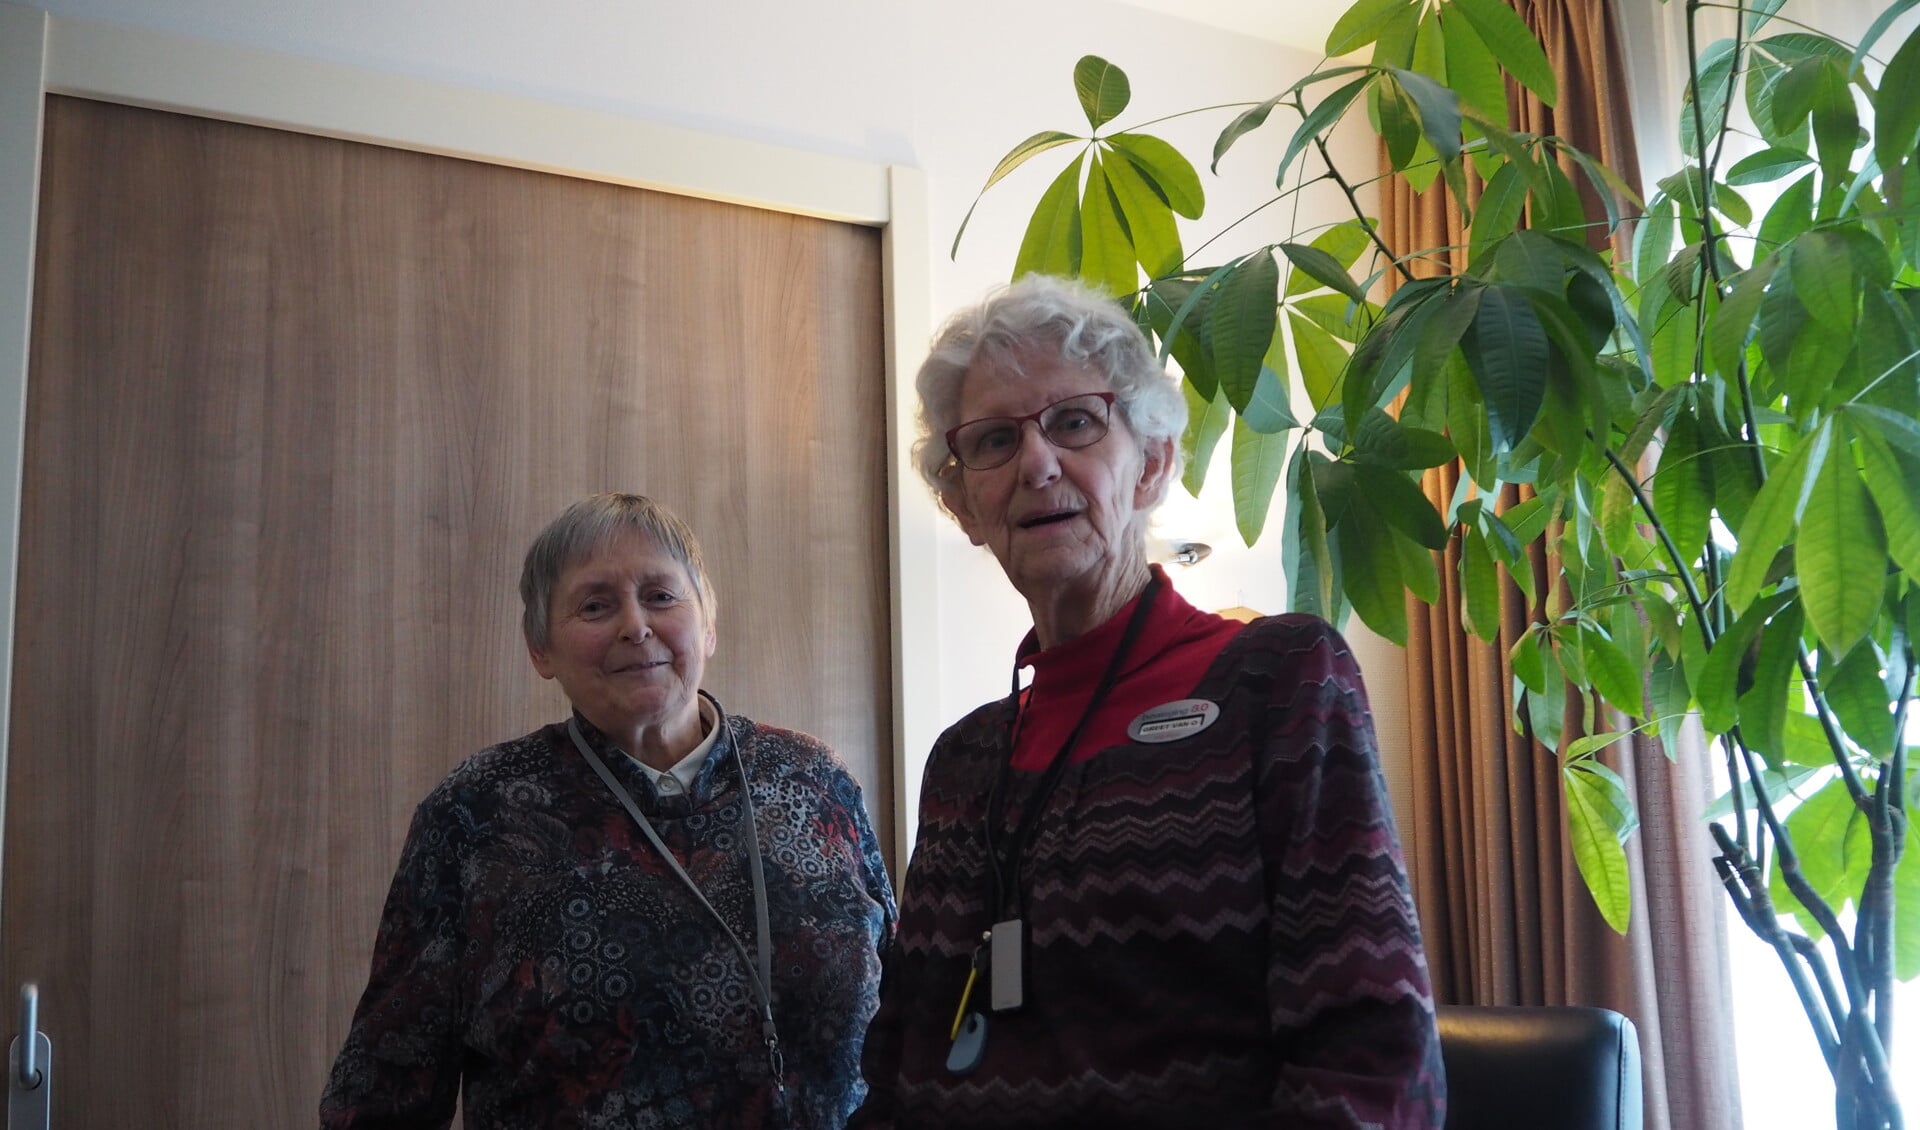 De bijna 80jarige Greet van Oosterom (rechts) met één van de bezoekers van de hersengym.